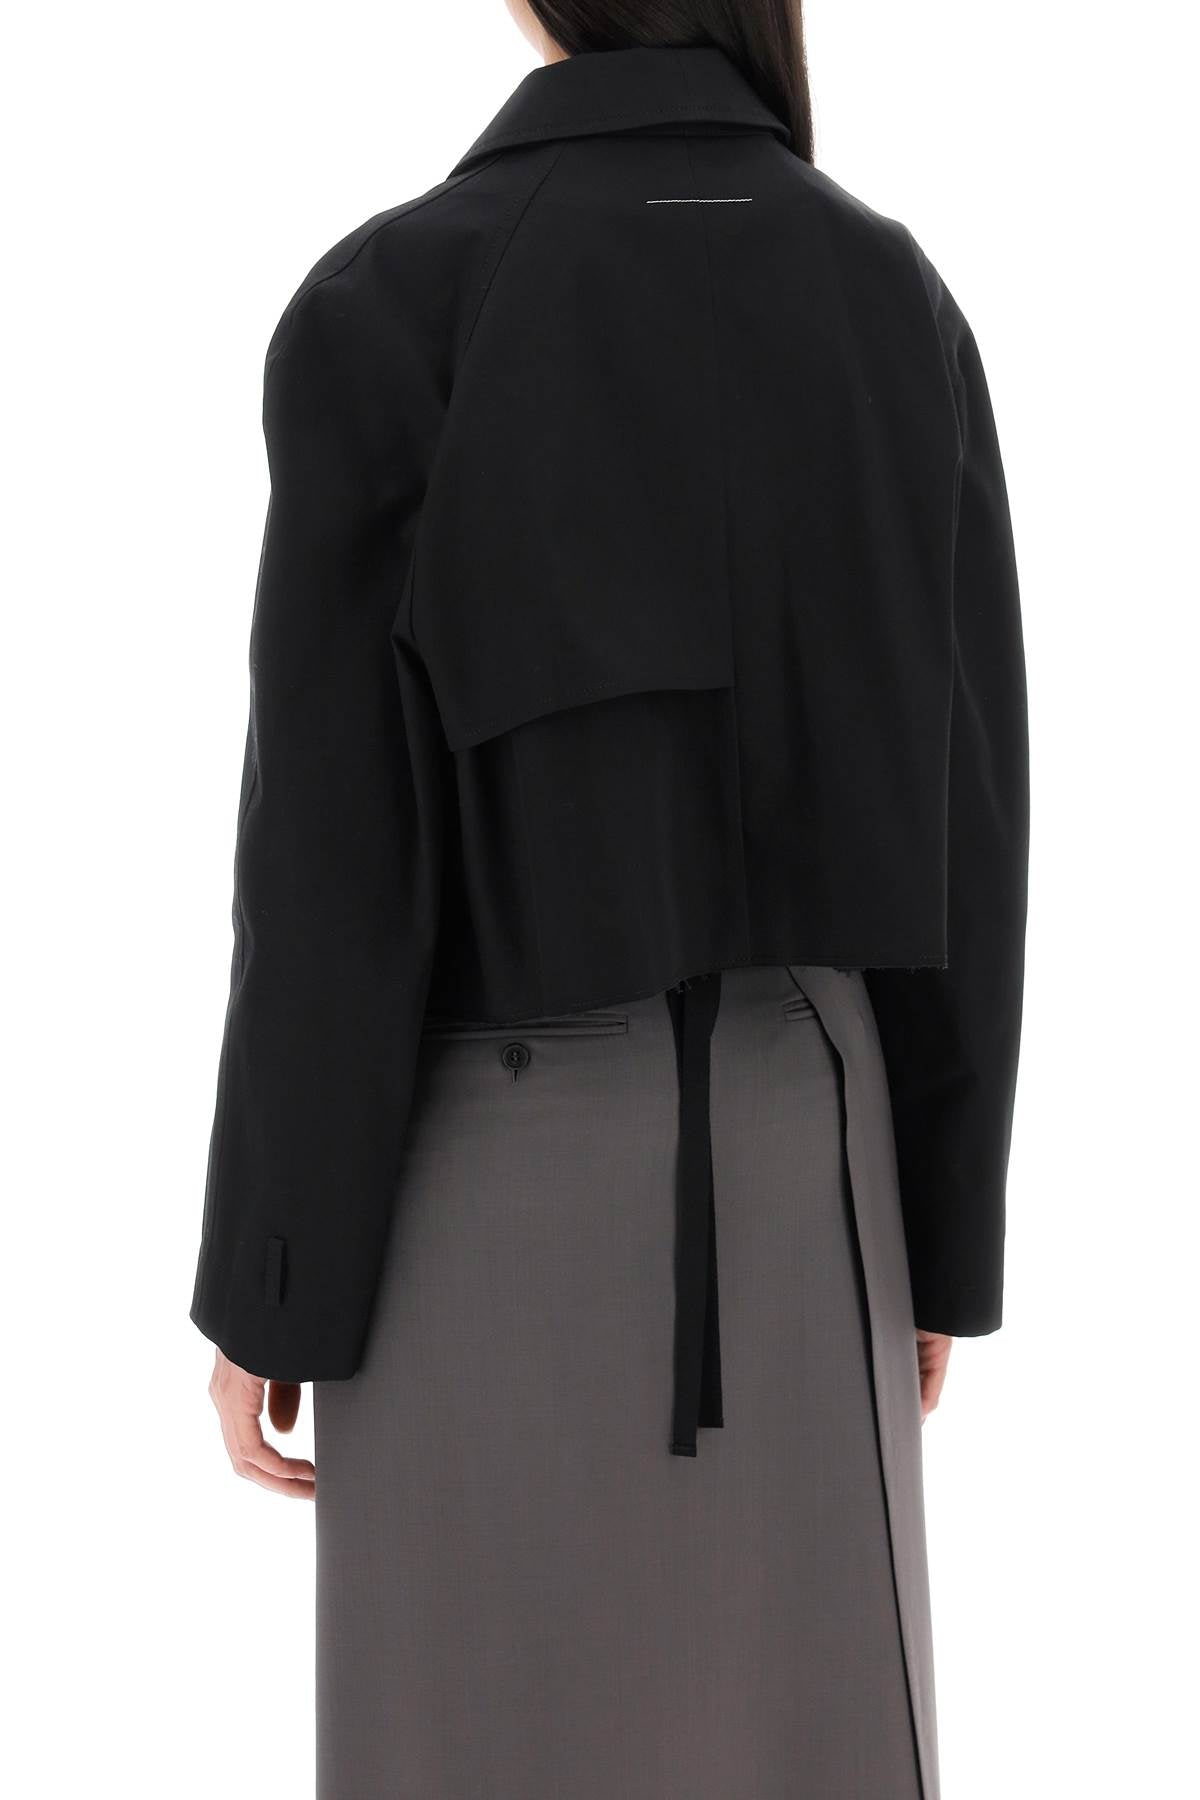 Áo khoác đôi dài cắt ngắn cho phụ nữ màu NERO